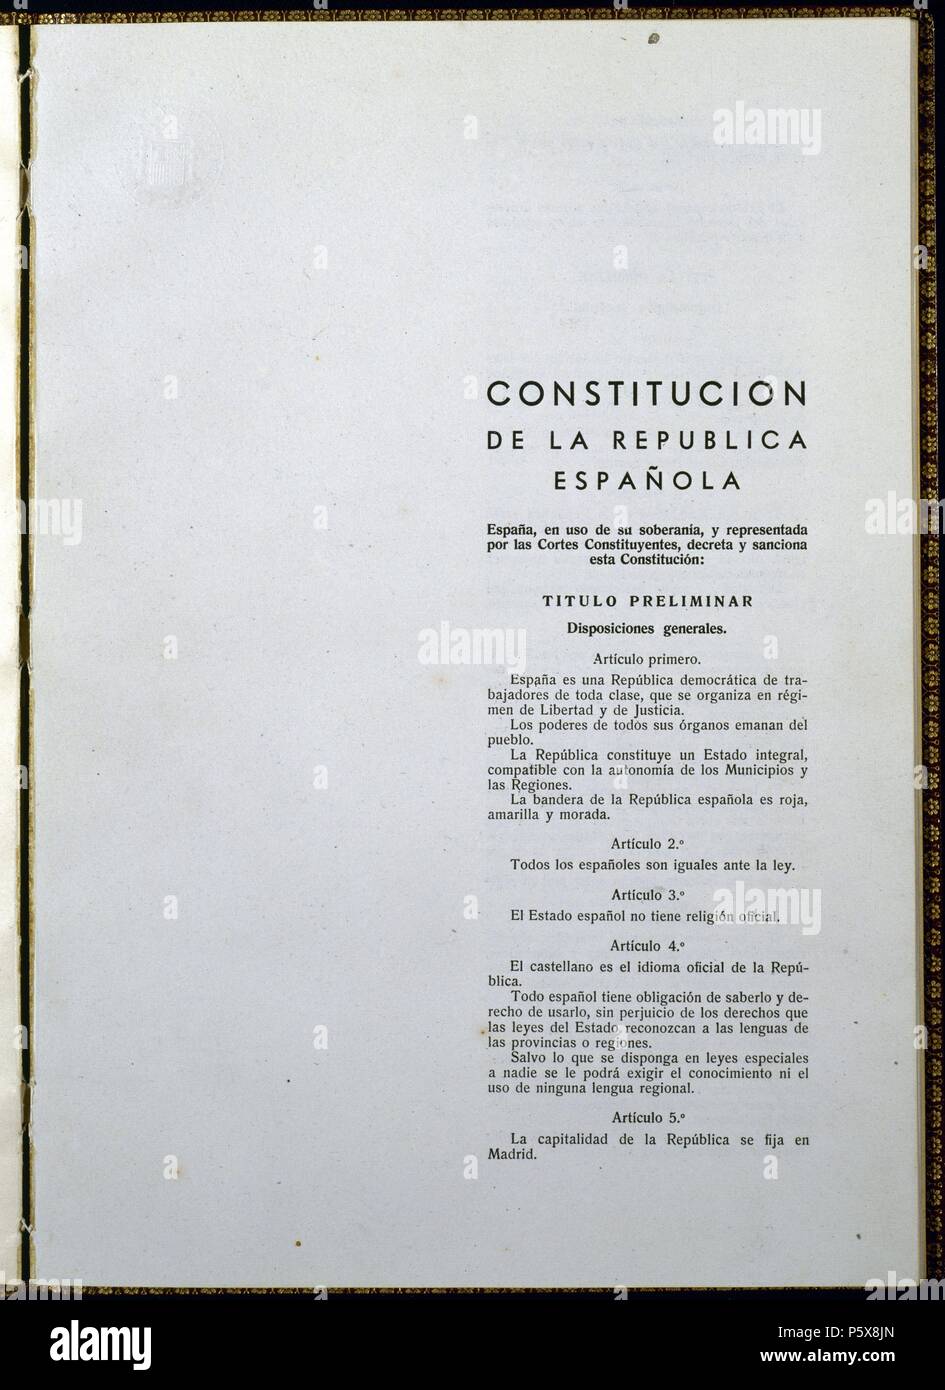 CONSTITUCION DE LA REPUBLICA ESPAÑOLA-TITULO PRELIMINAR 9/12/1931. Location: CONGRESO DE LOS DIPUTADOS-BIBLIOTECA, MADRID, SPAIN. Stock Photo